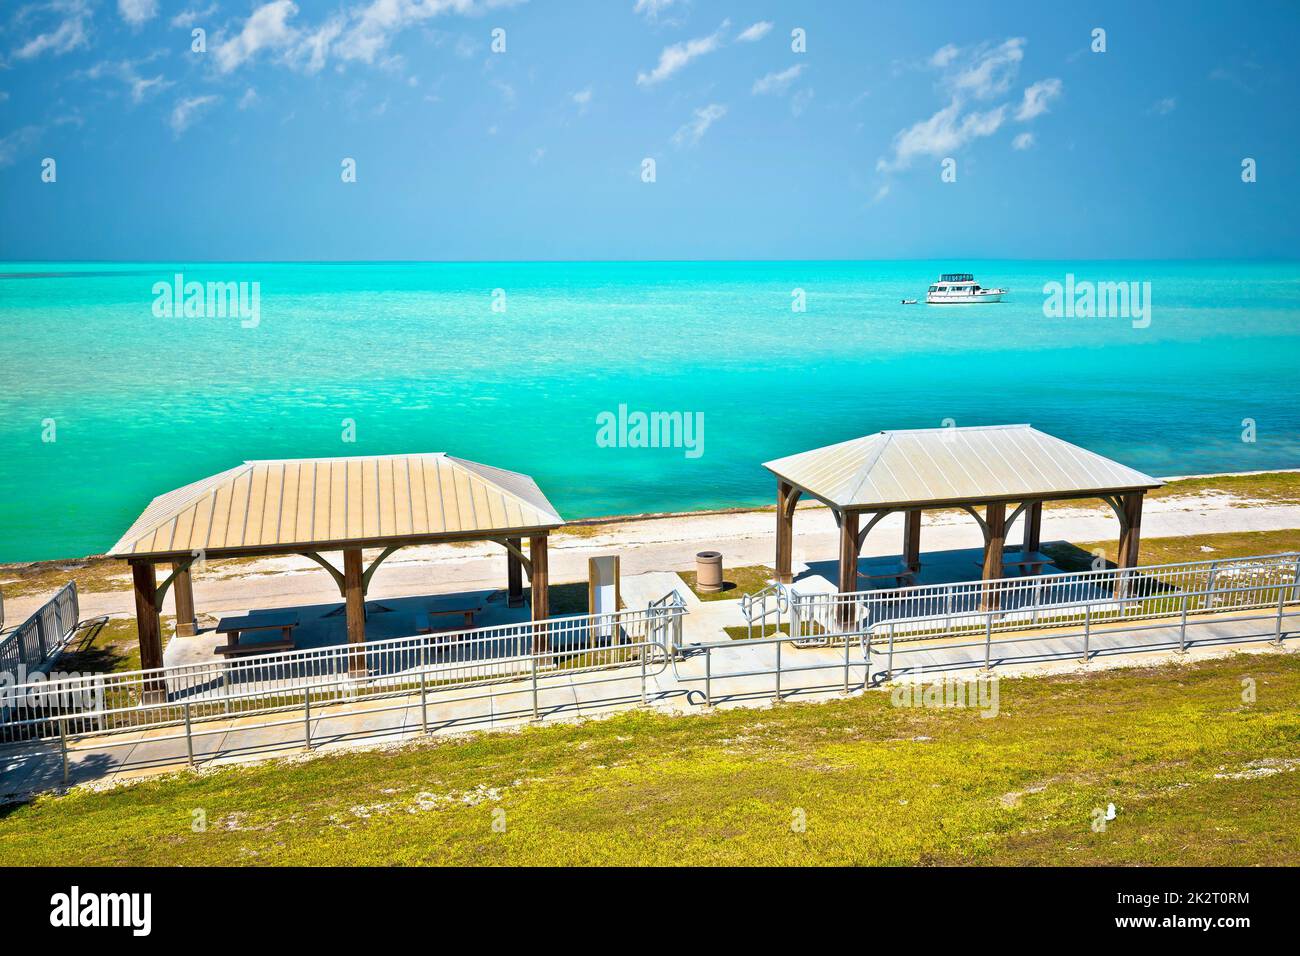 Florida Keys turquoise sea view near Marathon Stock Photo